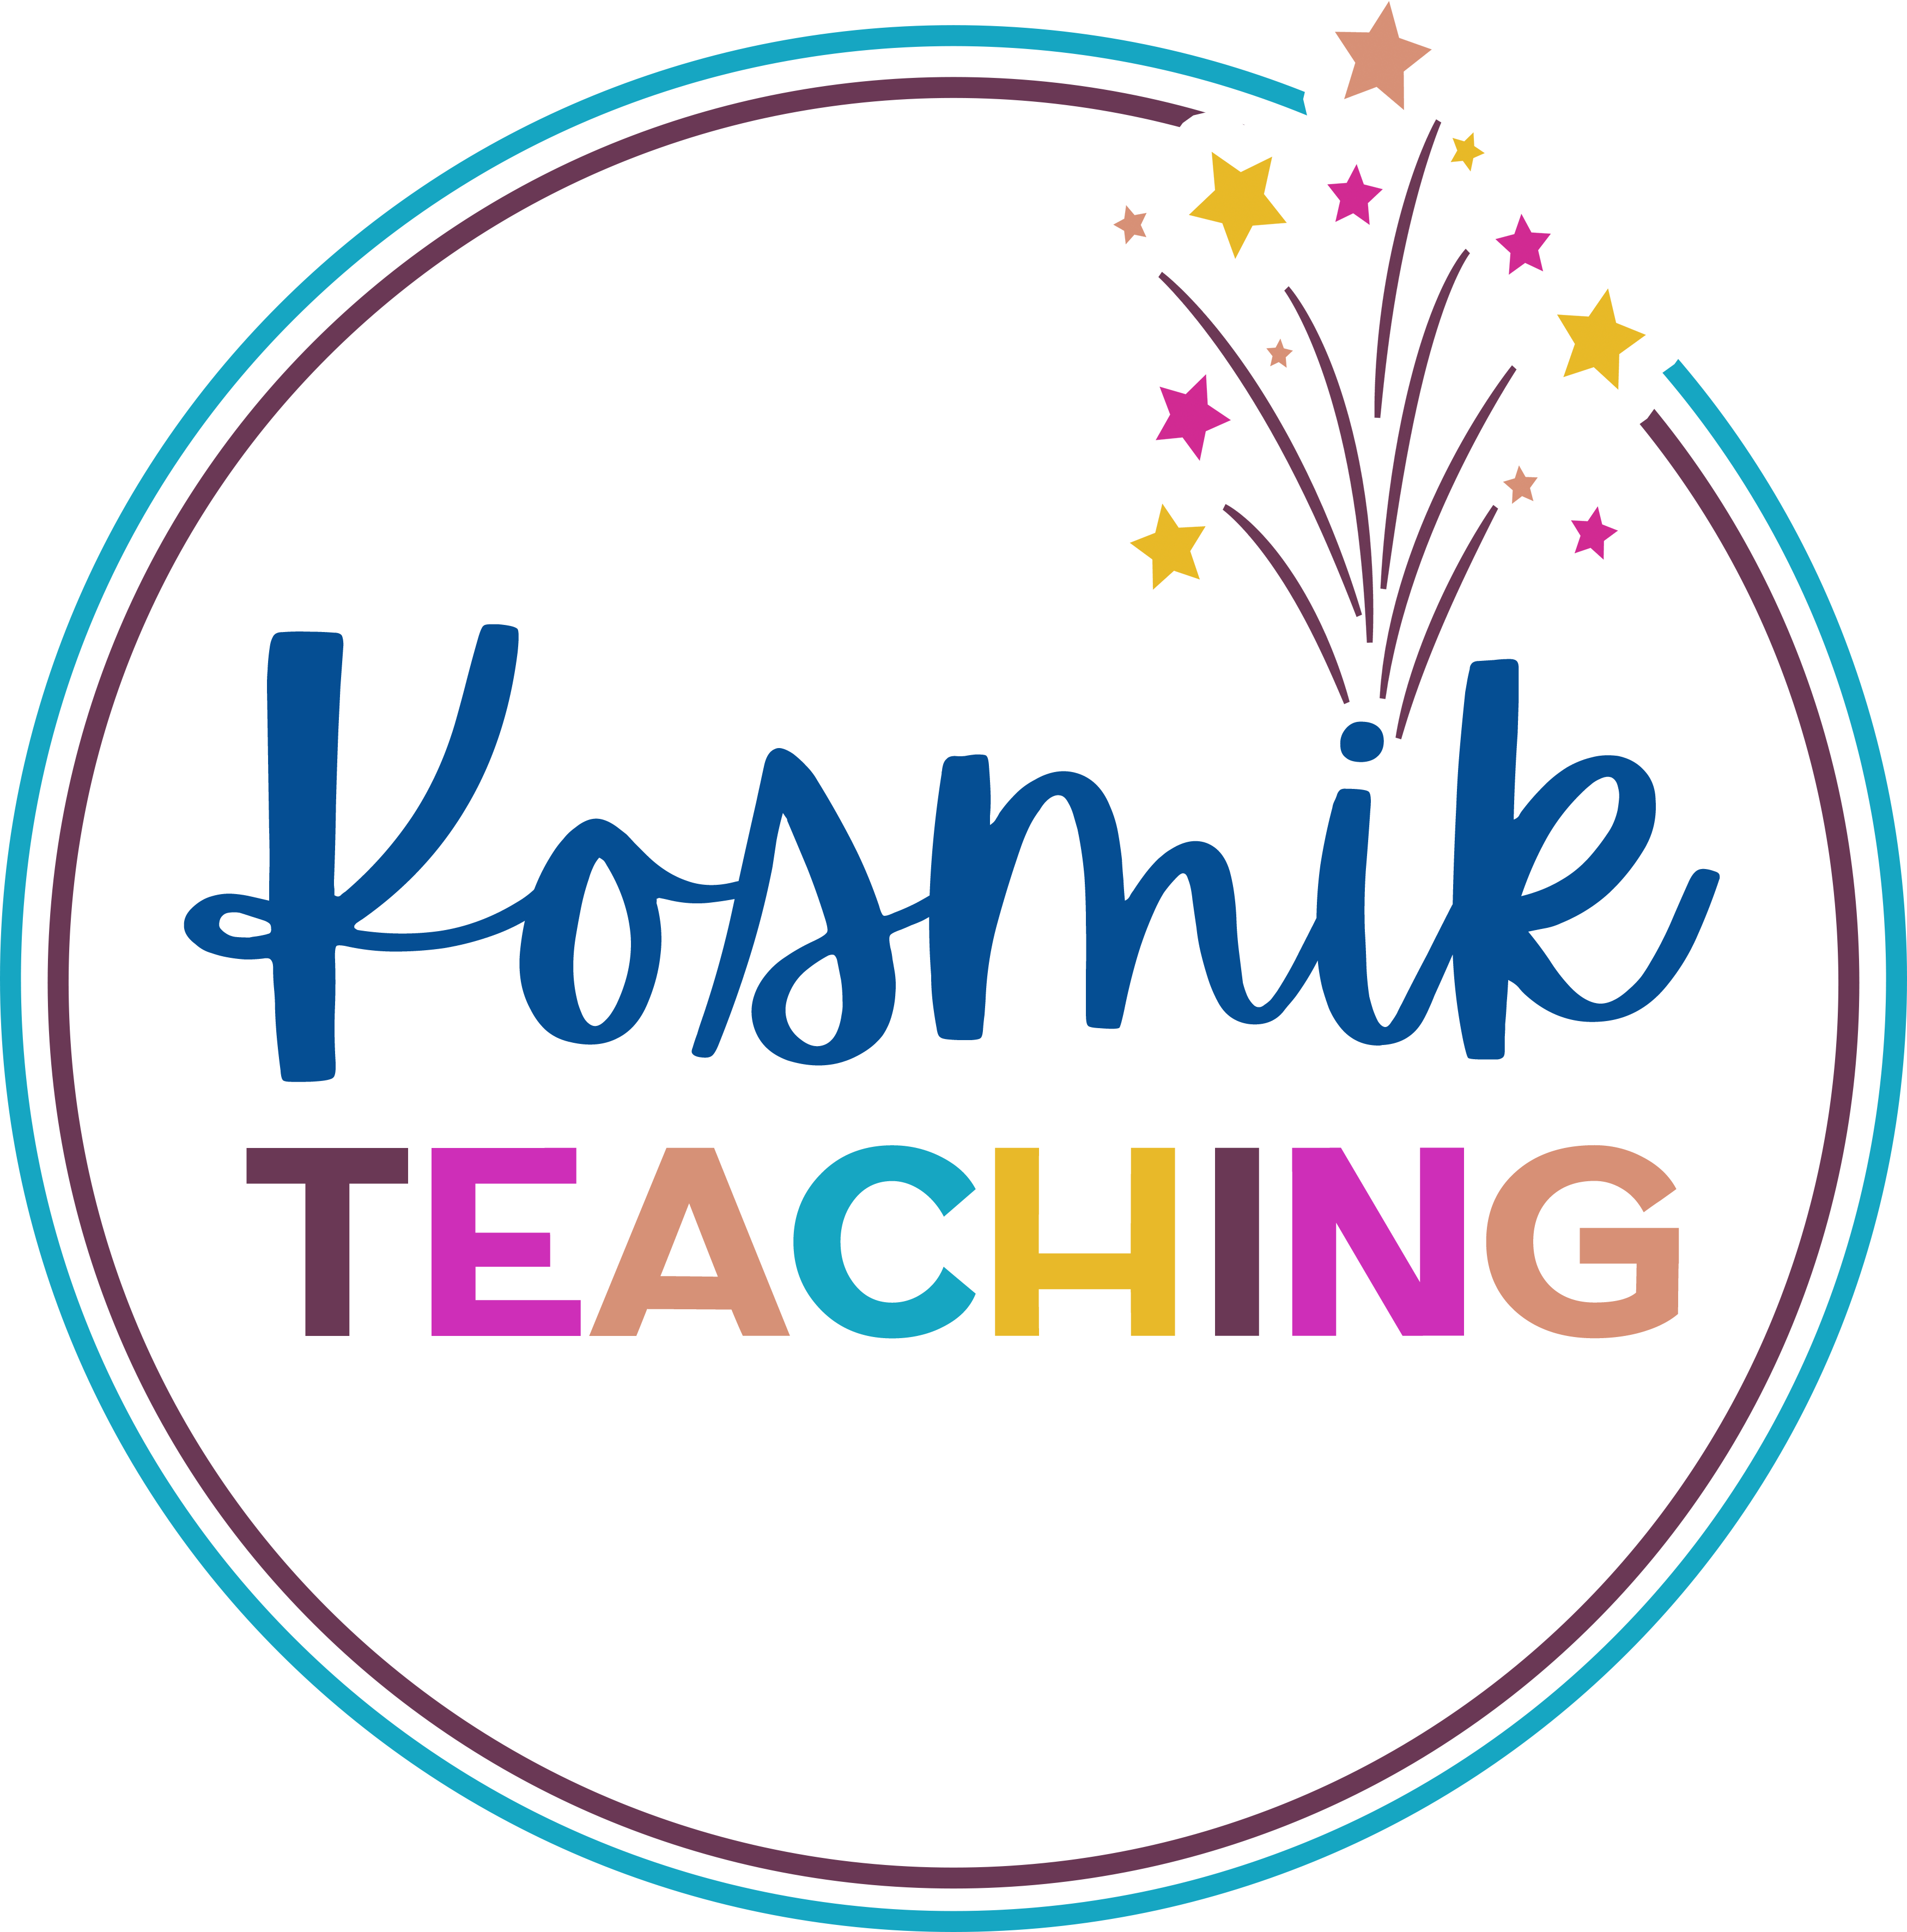 kosmikteaching-logo.png